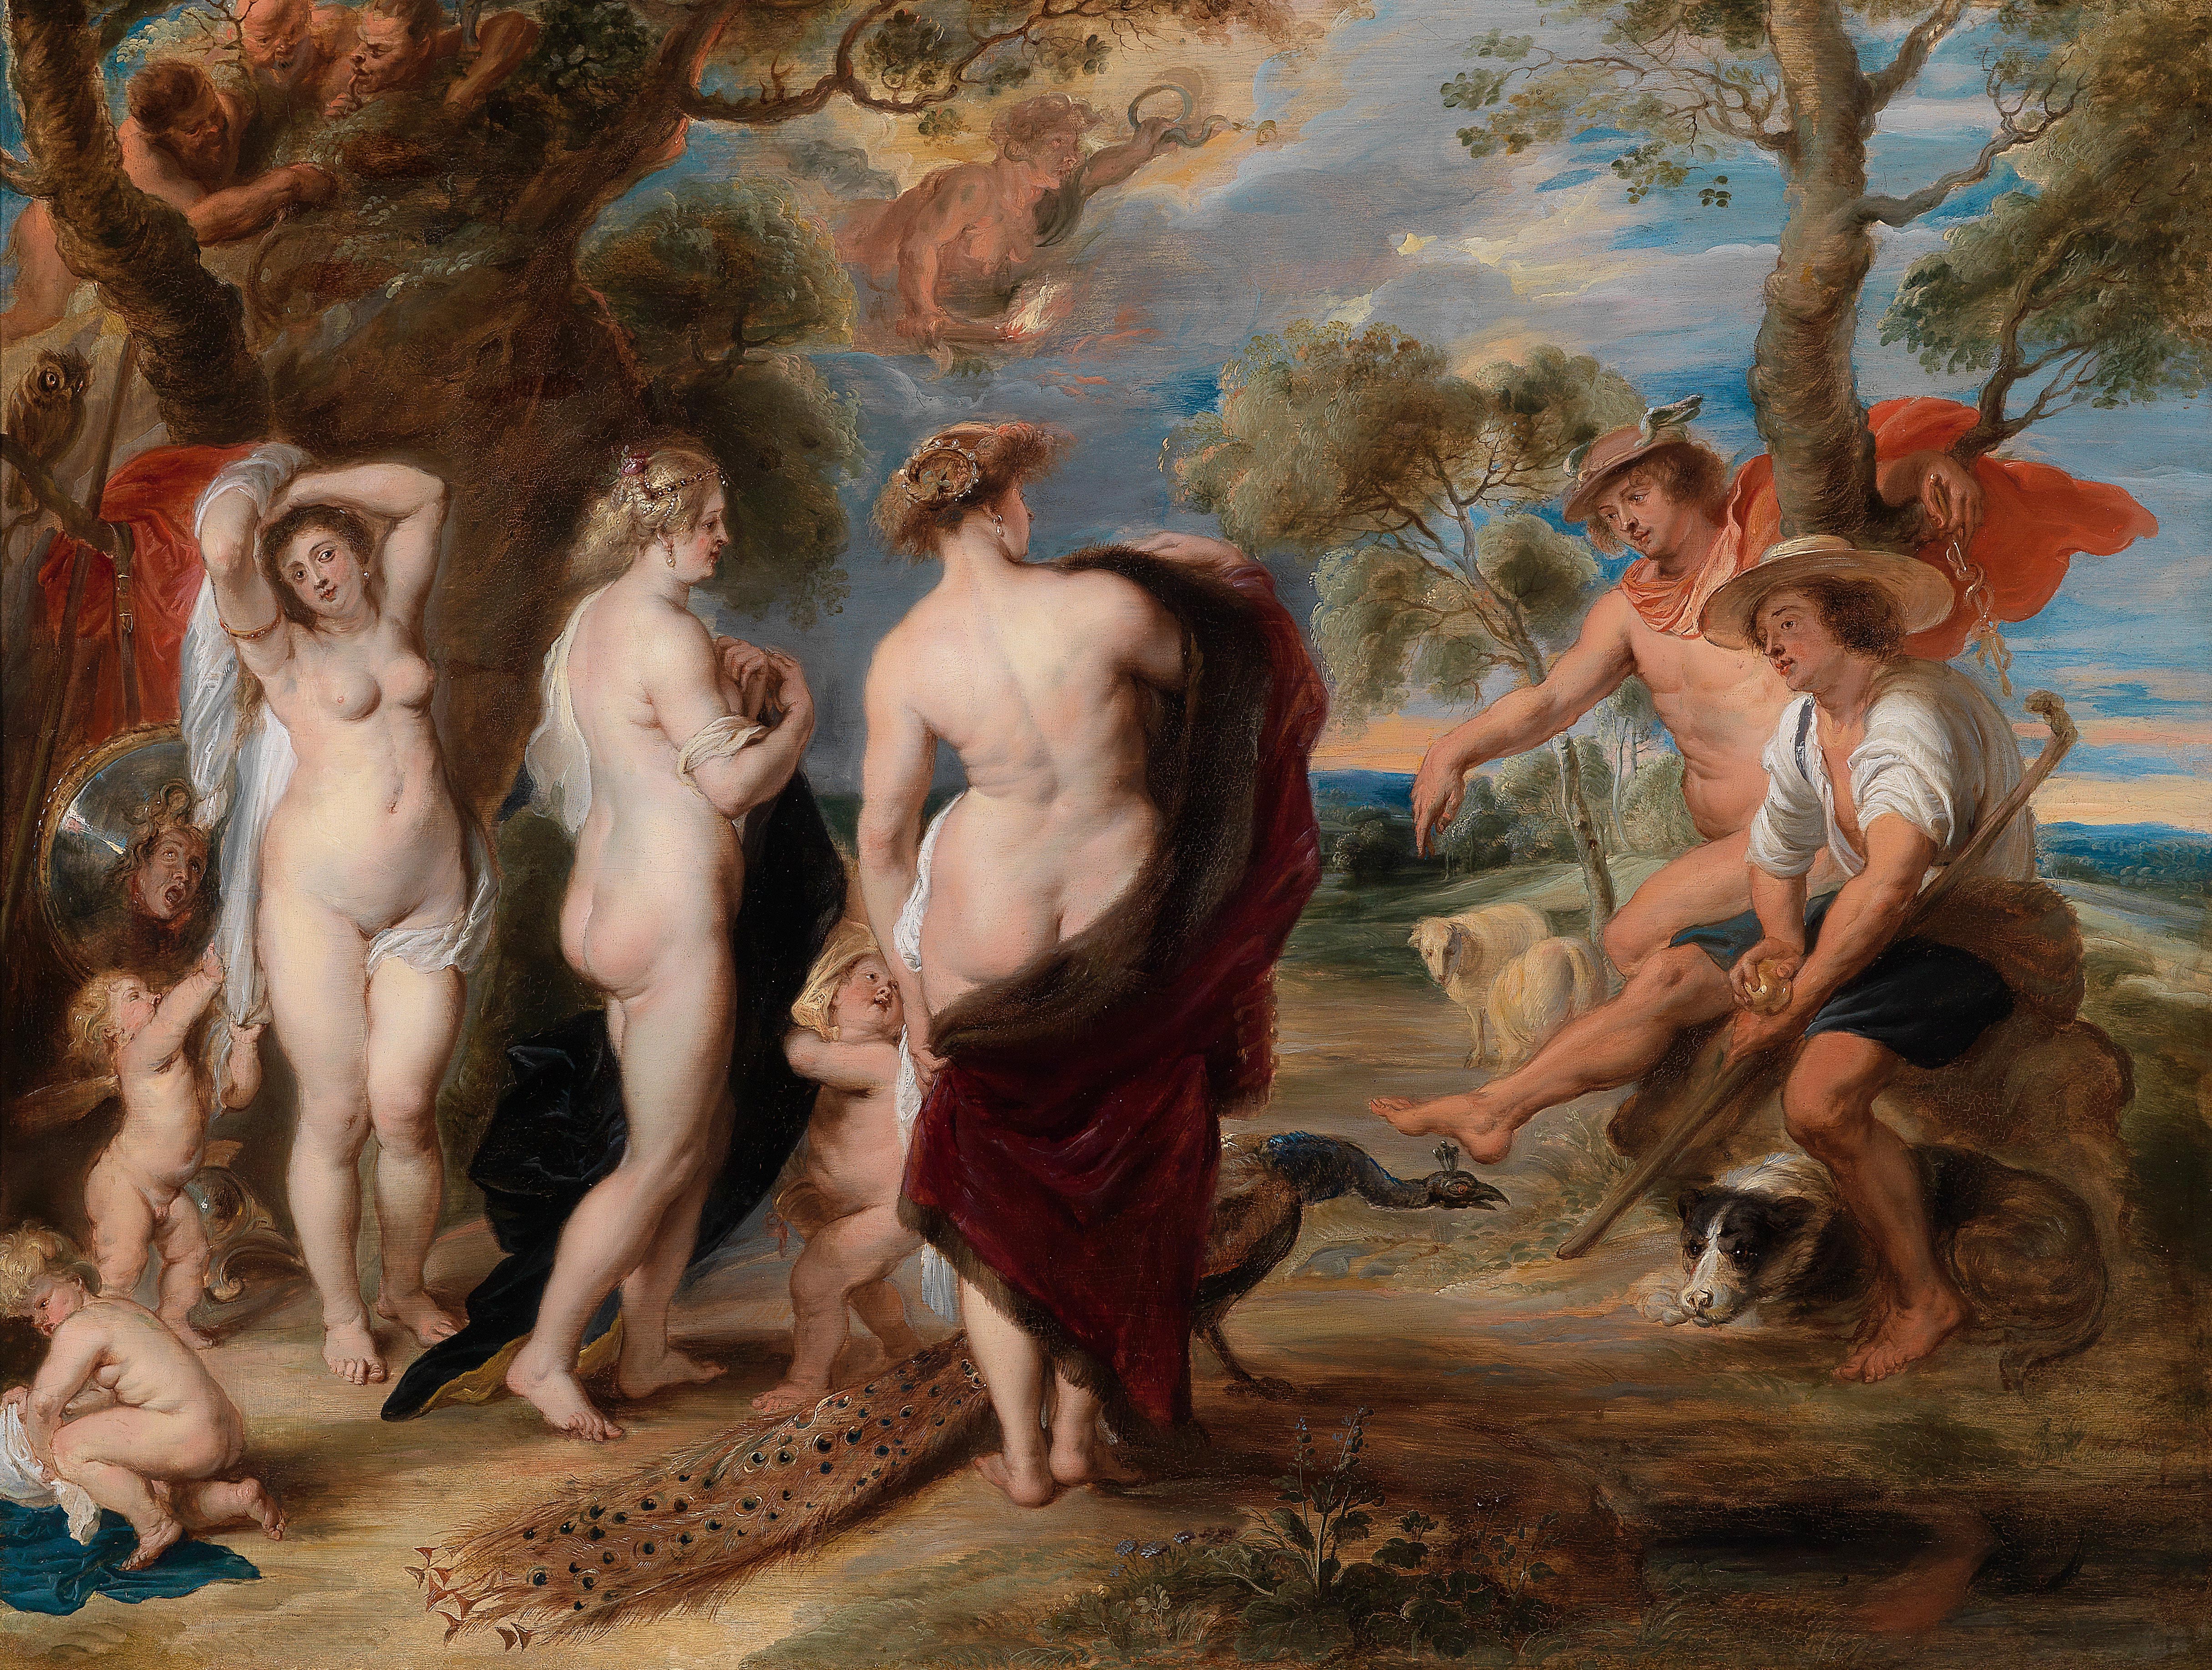 Le jugement de Paris by Peter Paul Rubens - 1636 